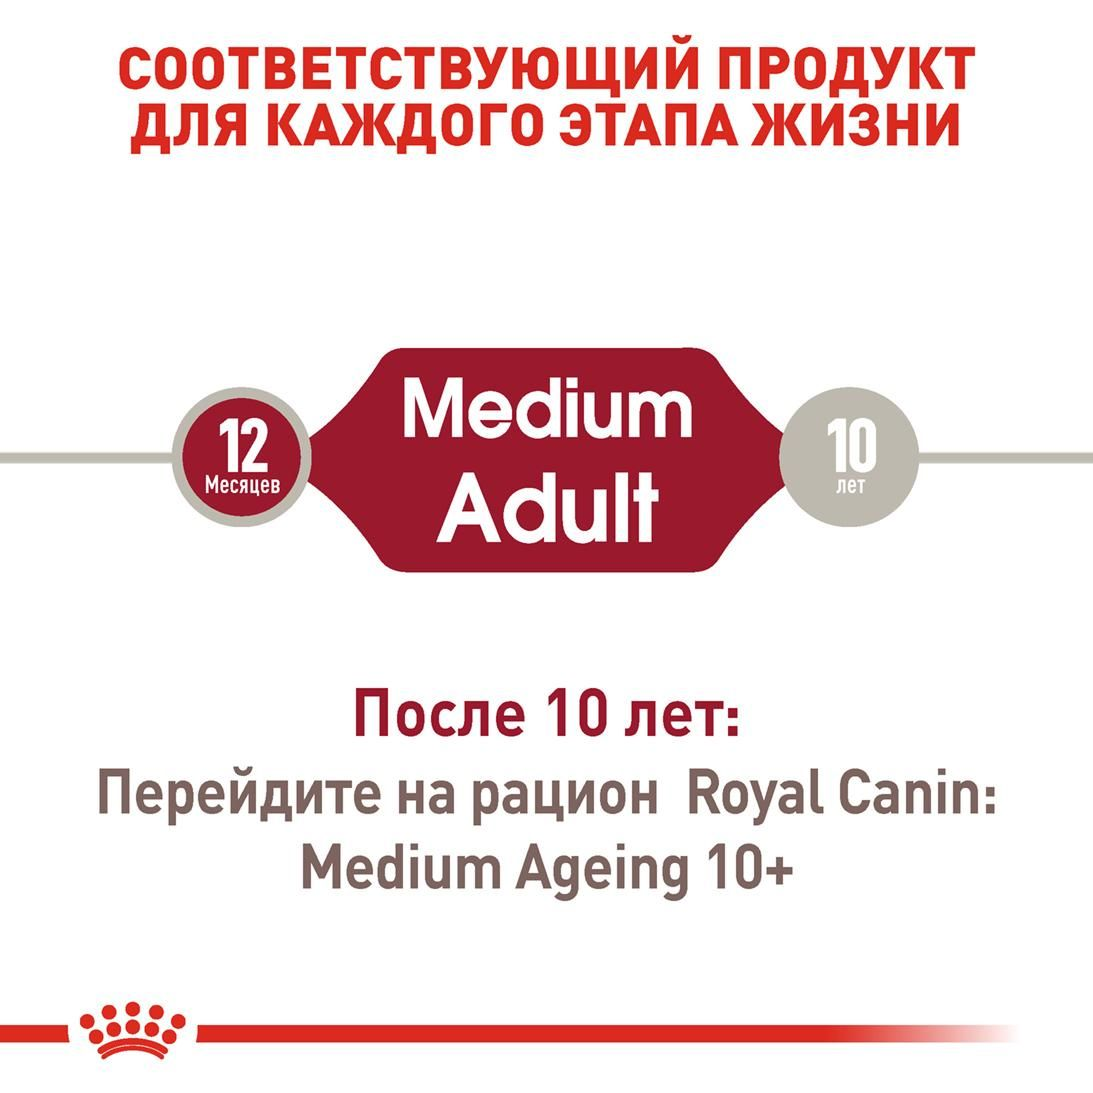 Medium Adult